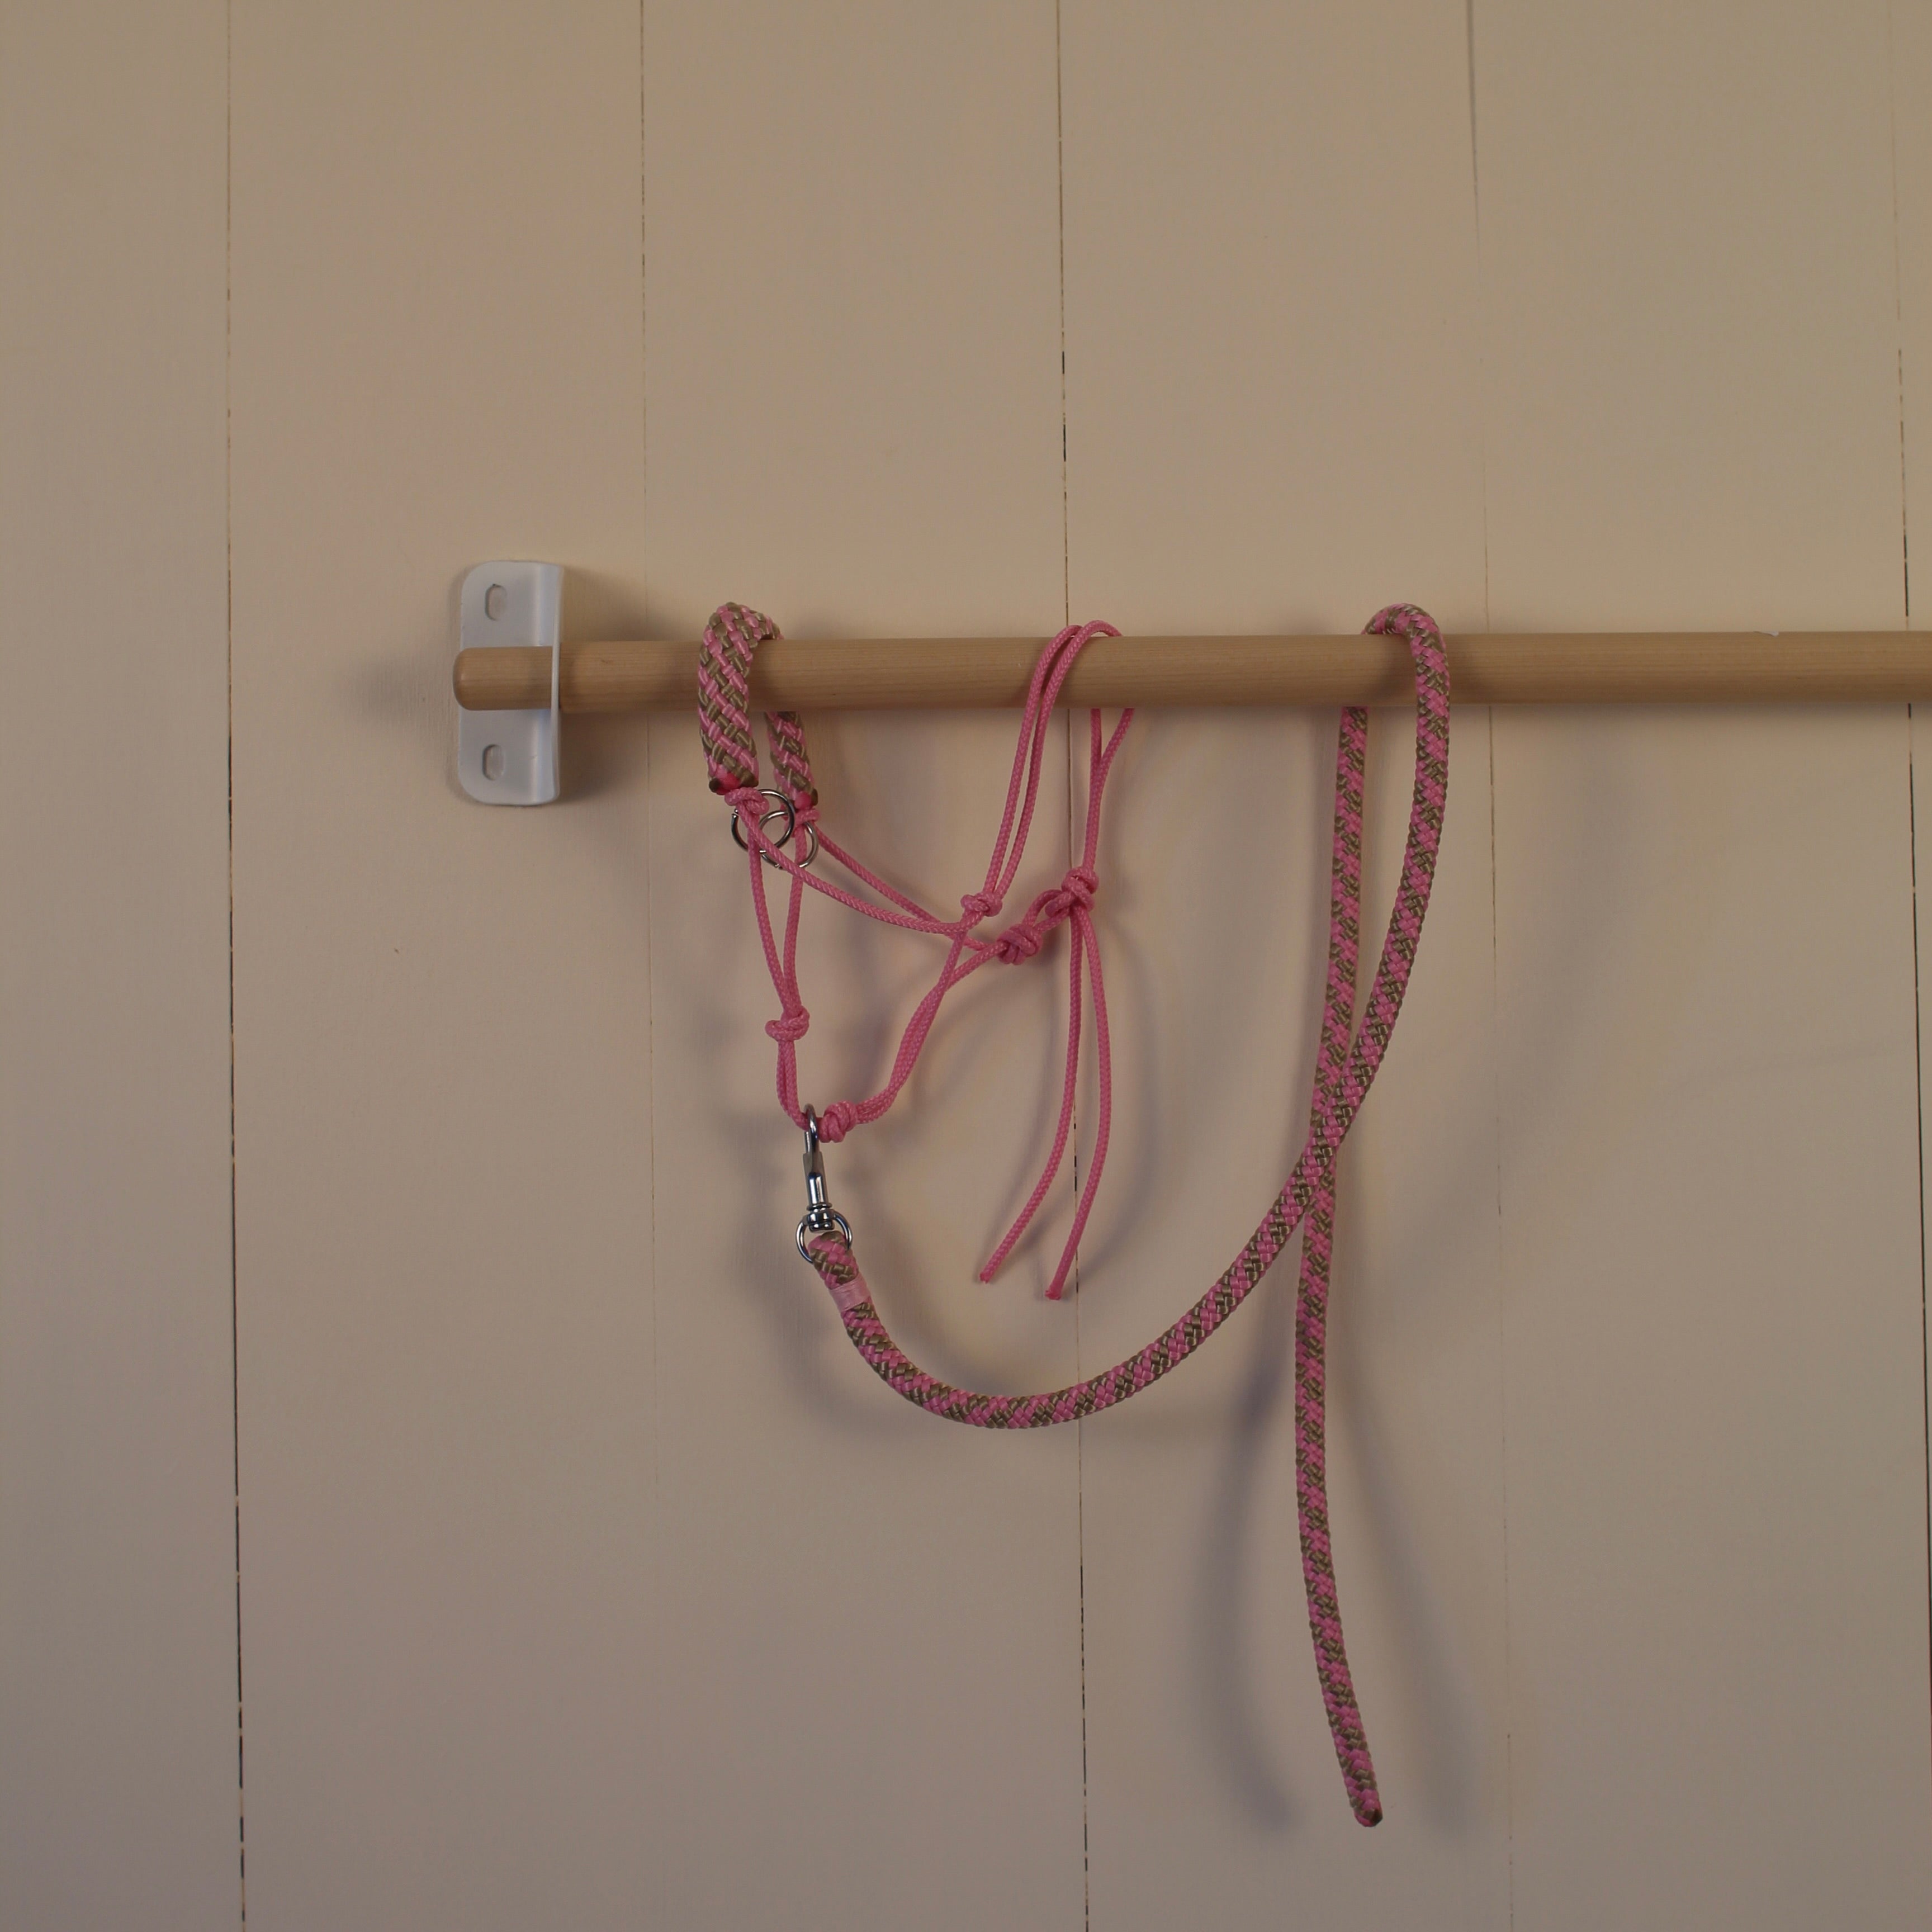 Halster met touw licht  roze / licht bruin gestreept